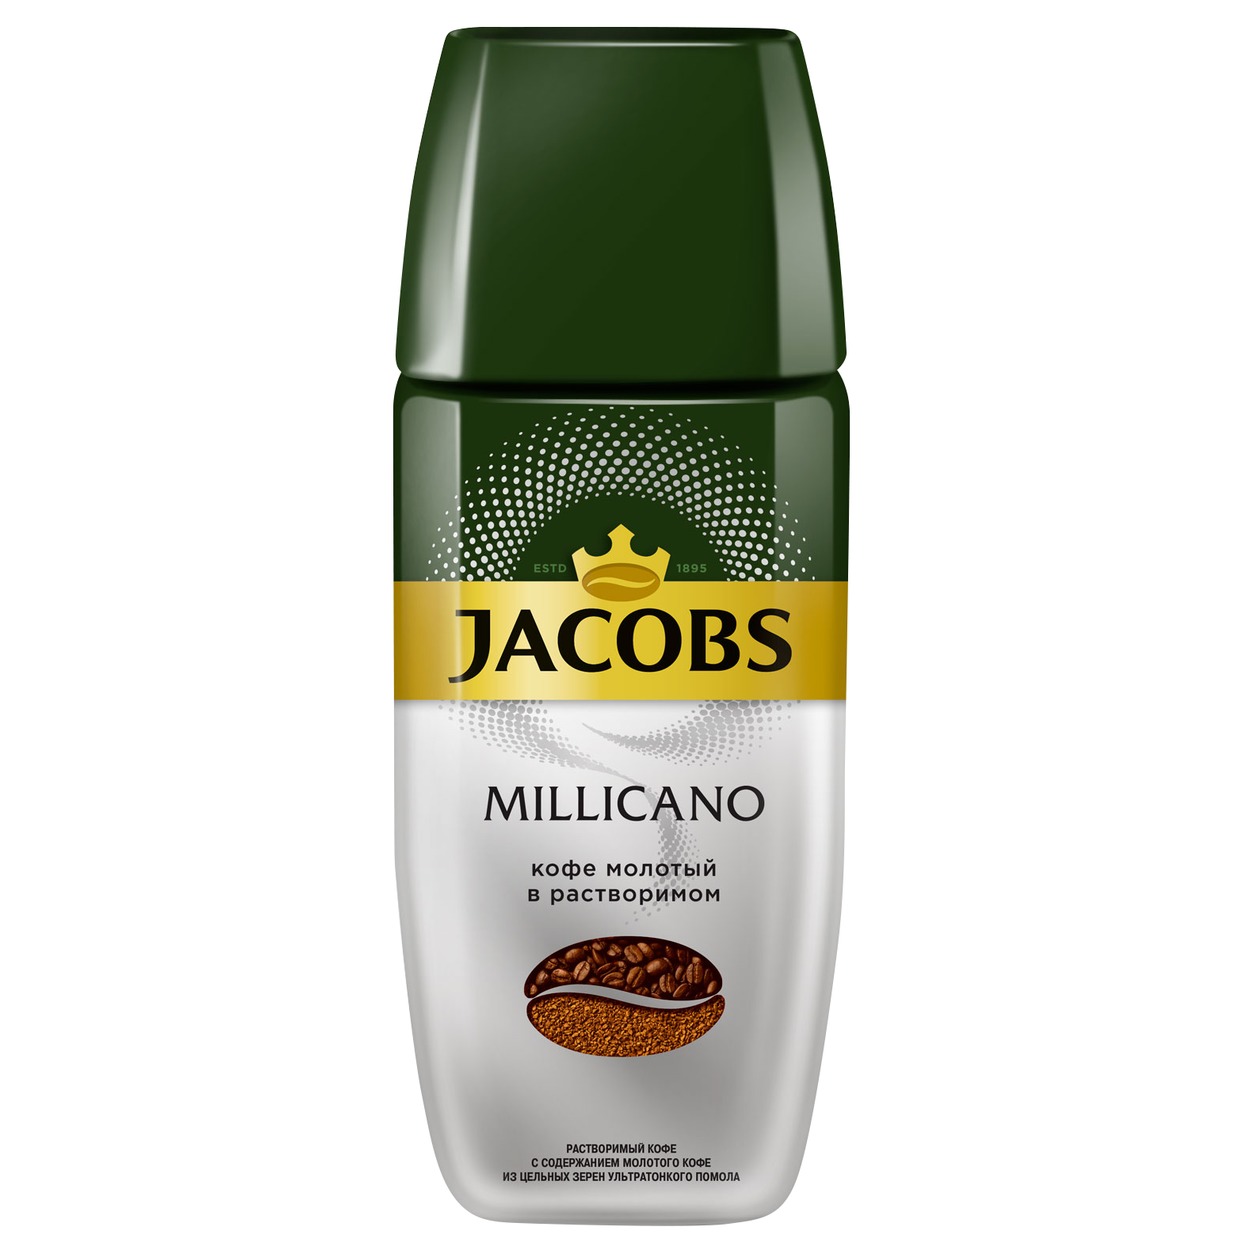 Кофе Jacobs Millicano, растворимый, 95 г по акции в Пятерочке